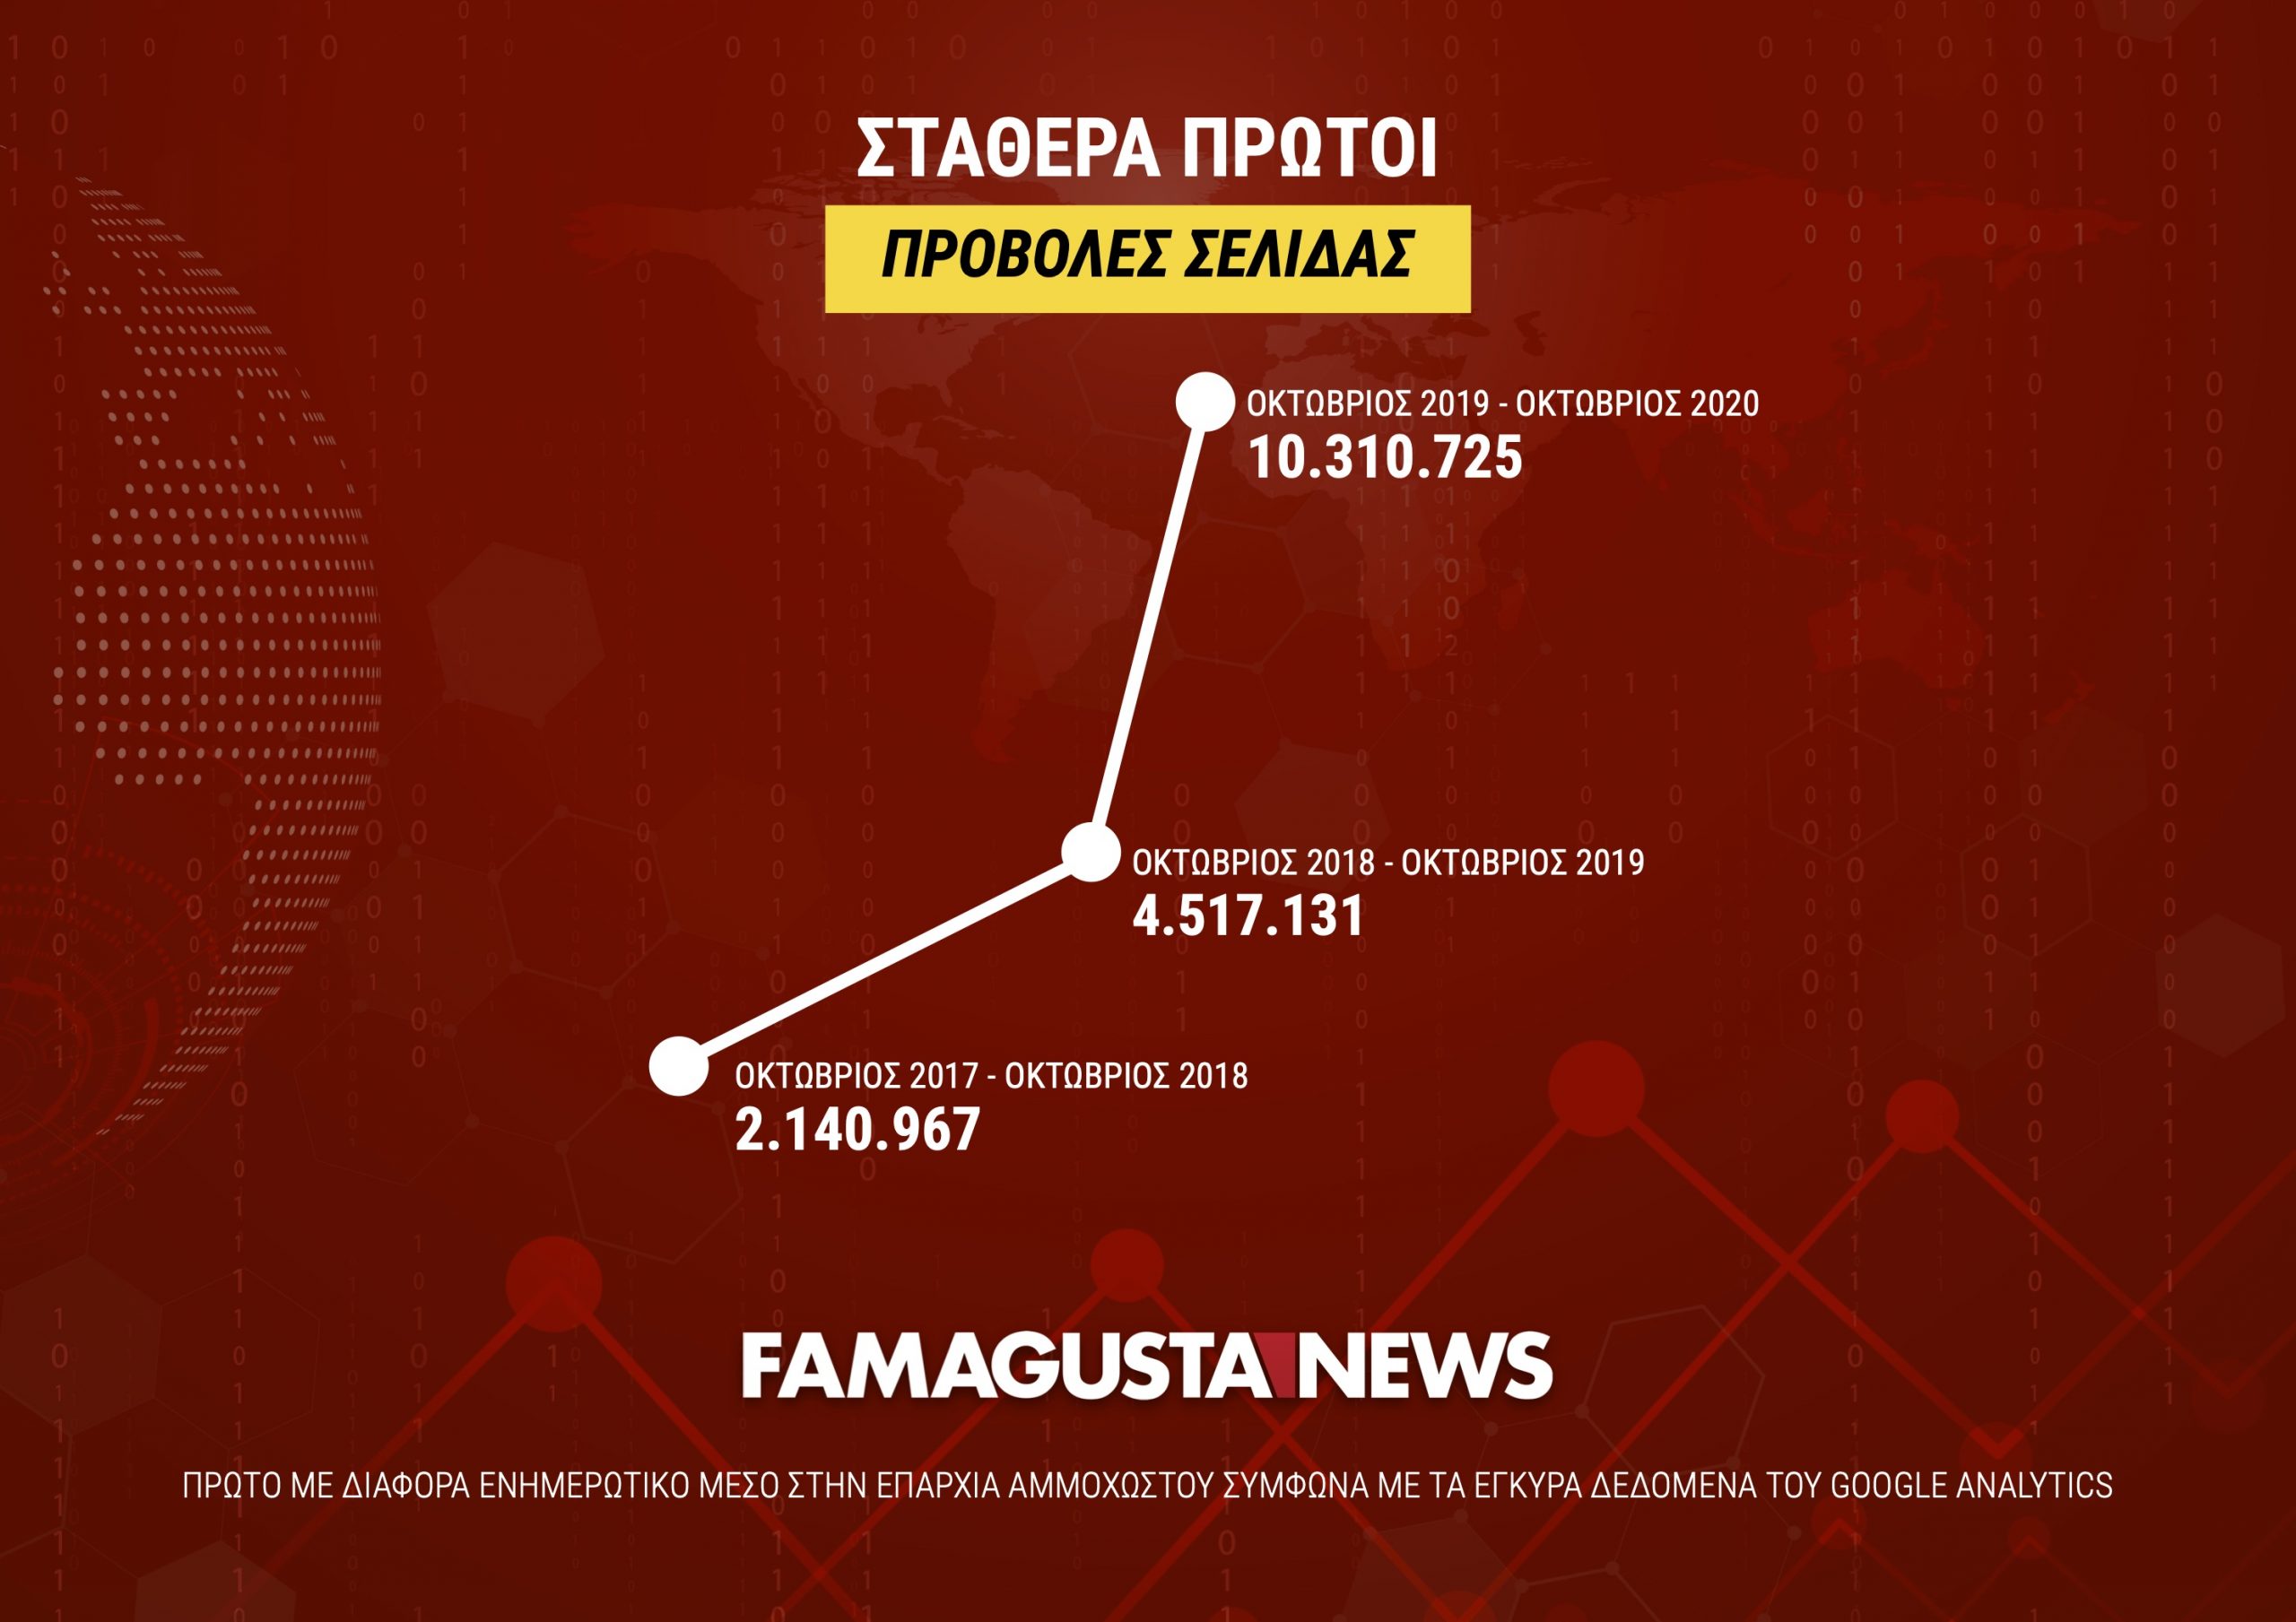 ПРОСМОТРЫ СТРАНИЦЫ масштабируются FamagustaNews